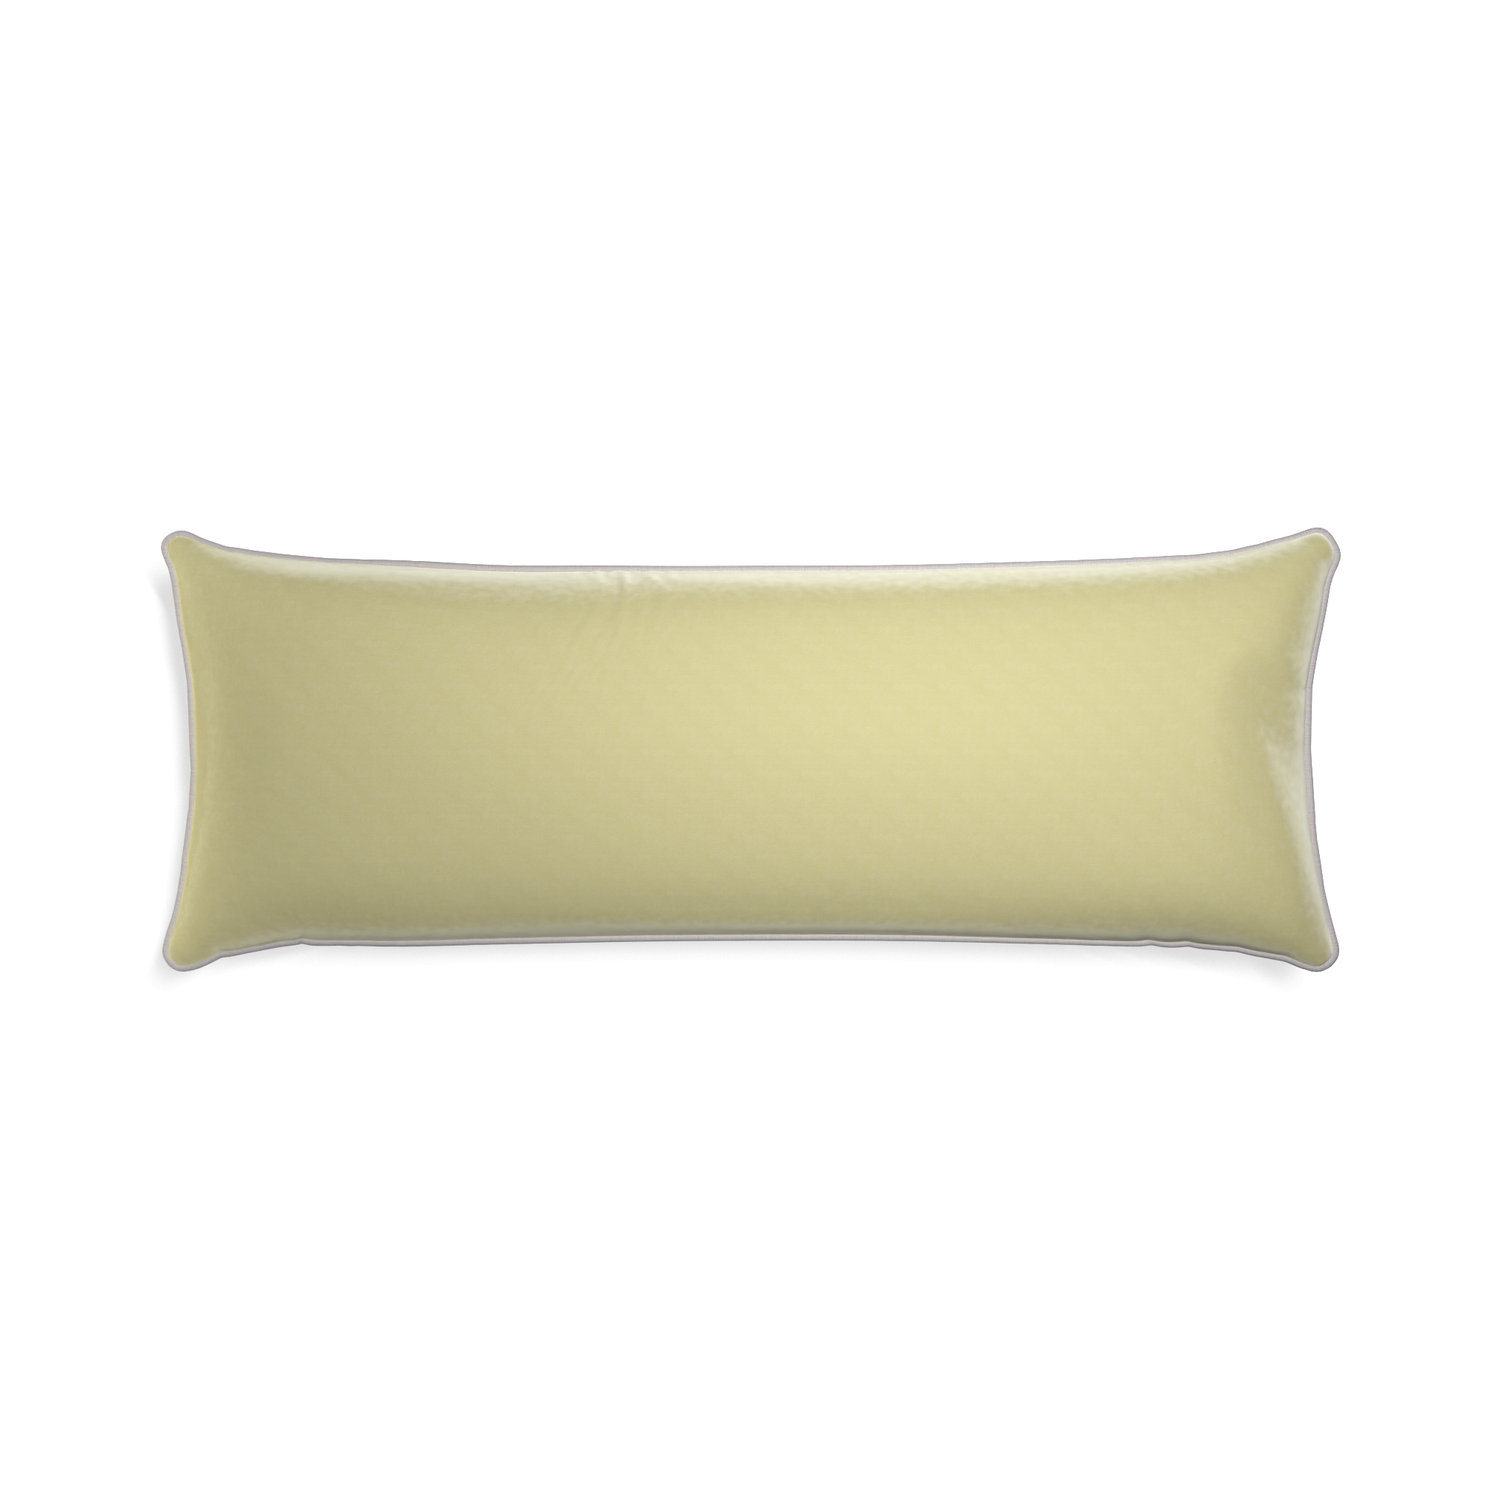 rectangle light green velvet pillow with light gray piping